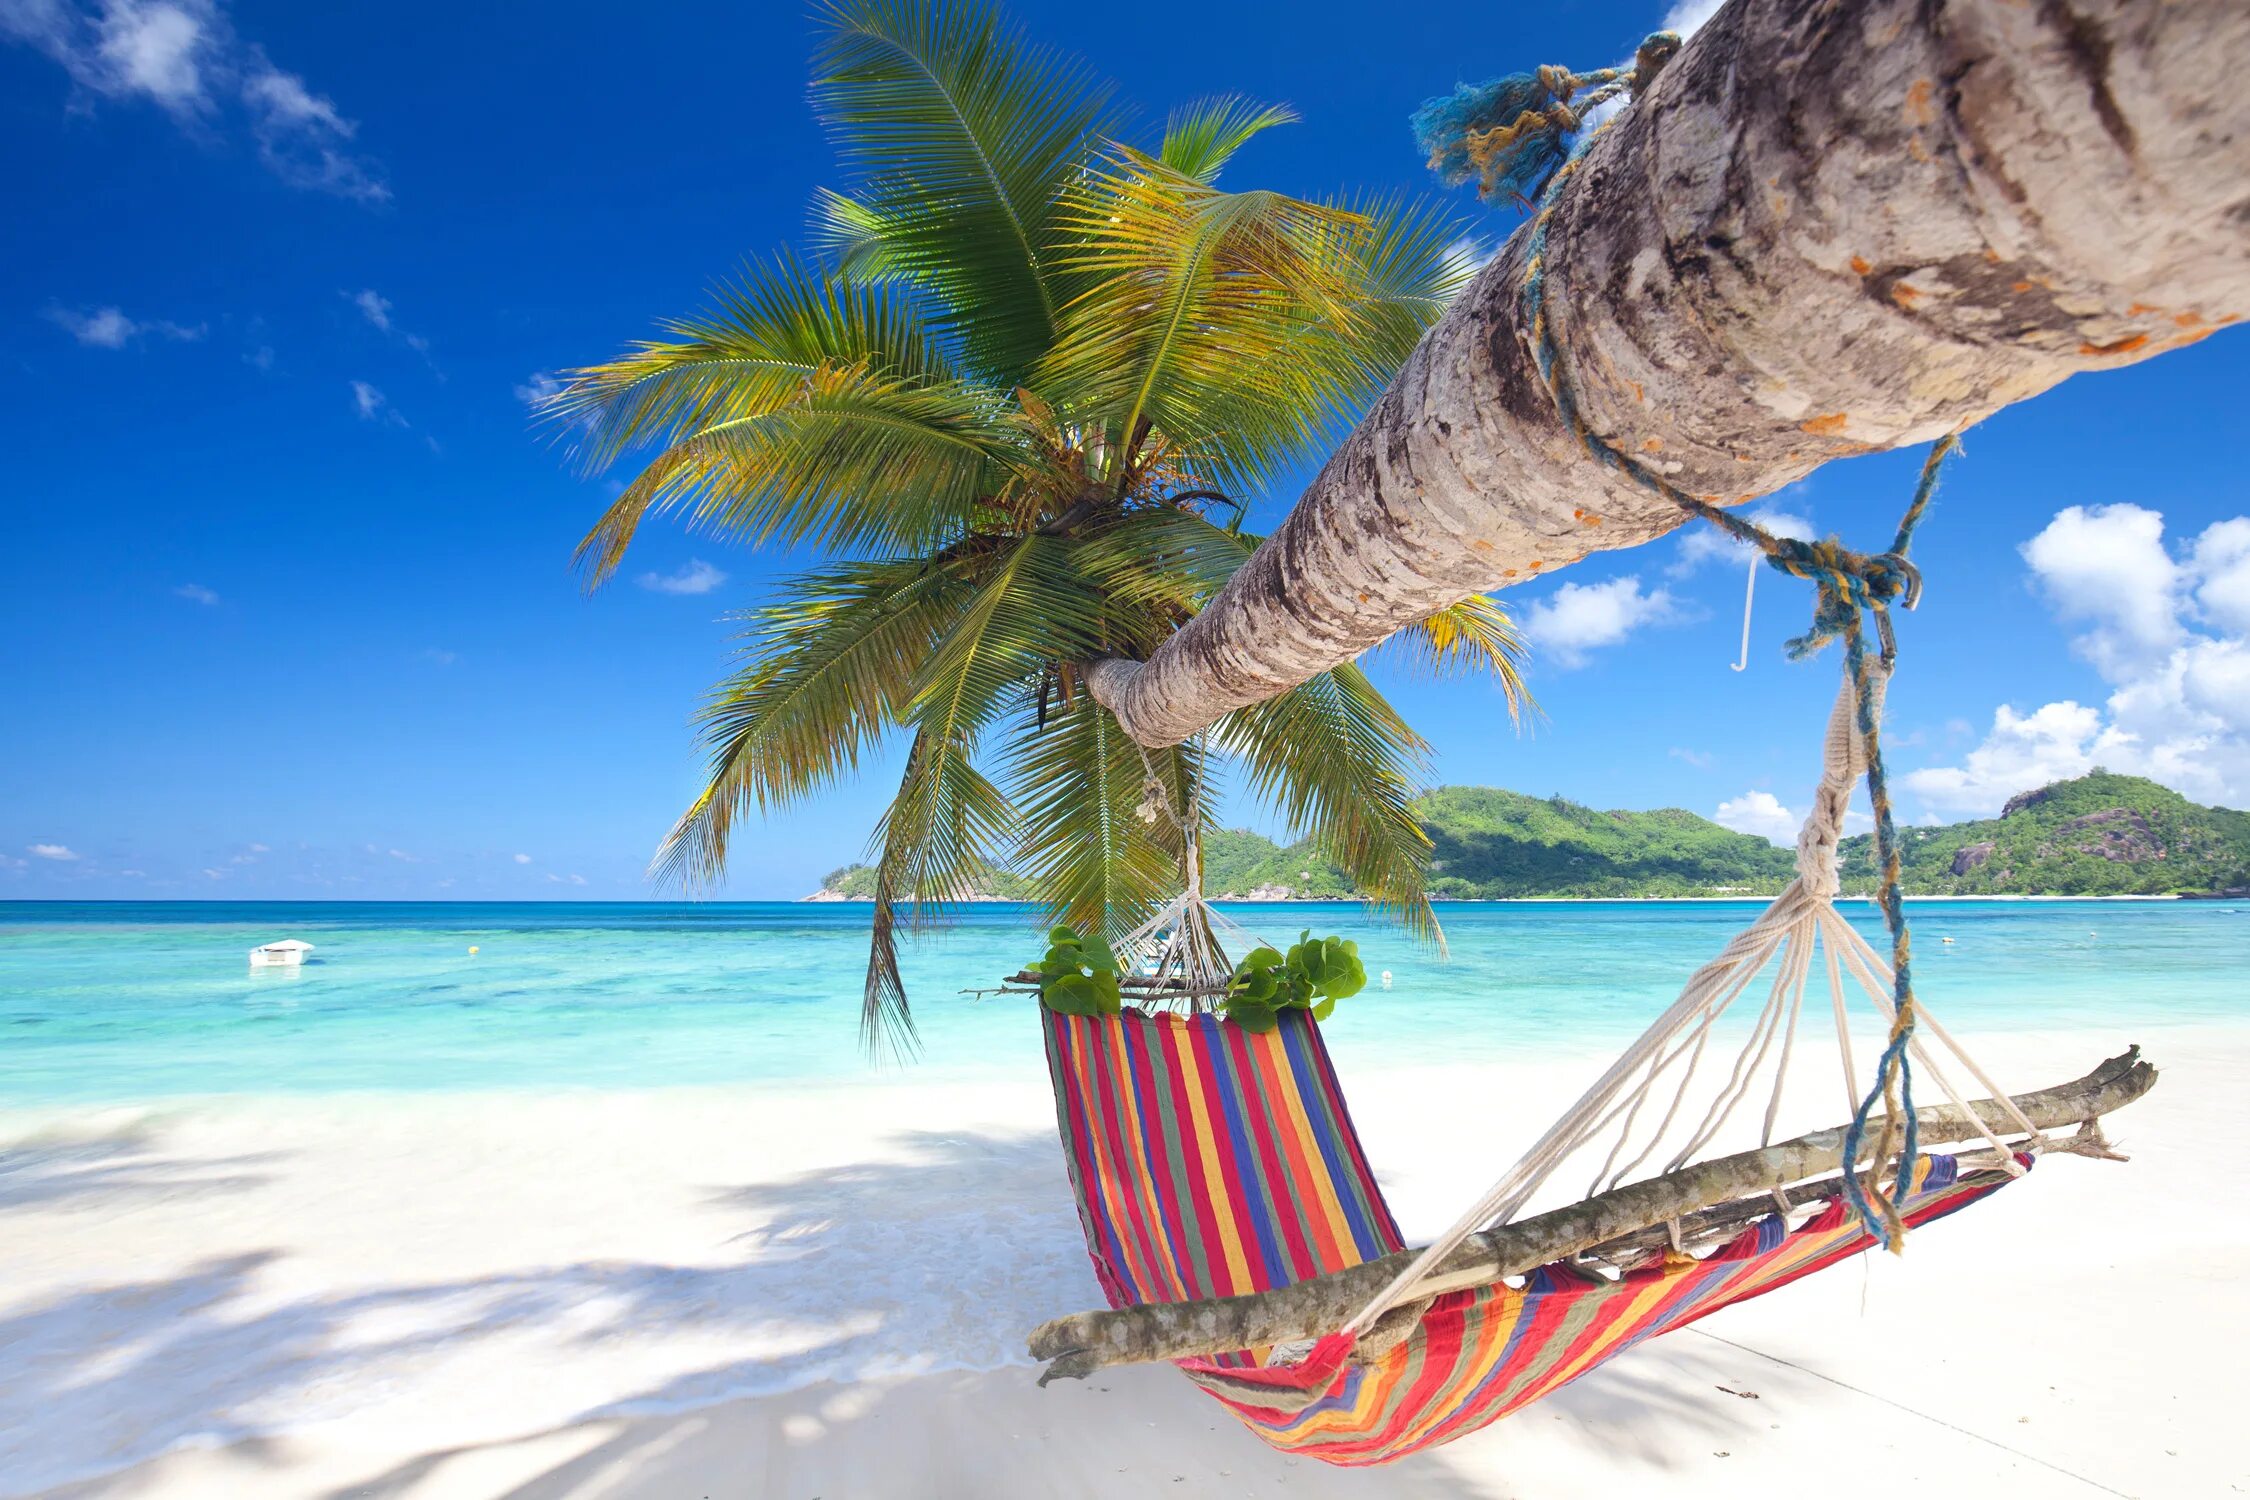 Island trip. Пляж Баунти Тайланд. Пляж с пальмами. Гамак на пляже с пальмами. Райский остров.